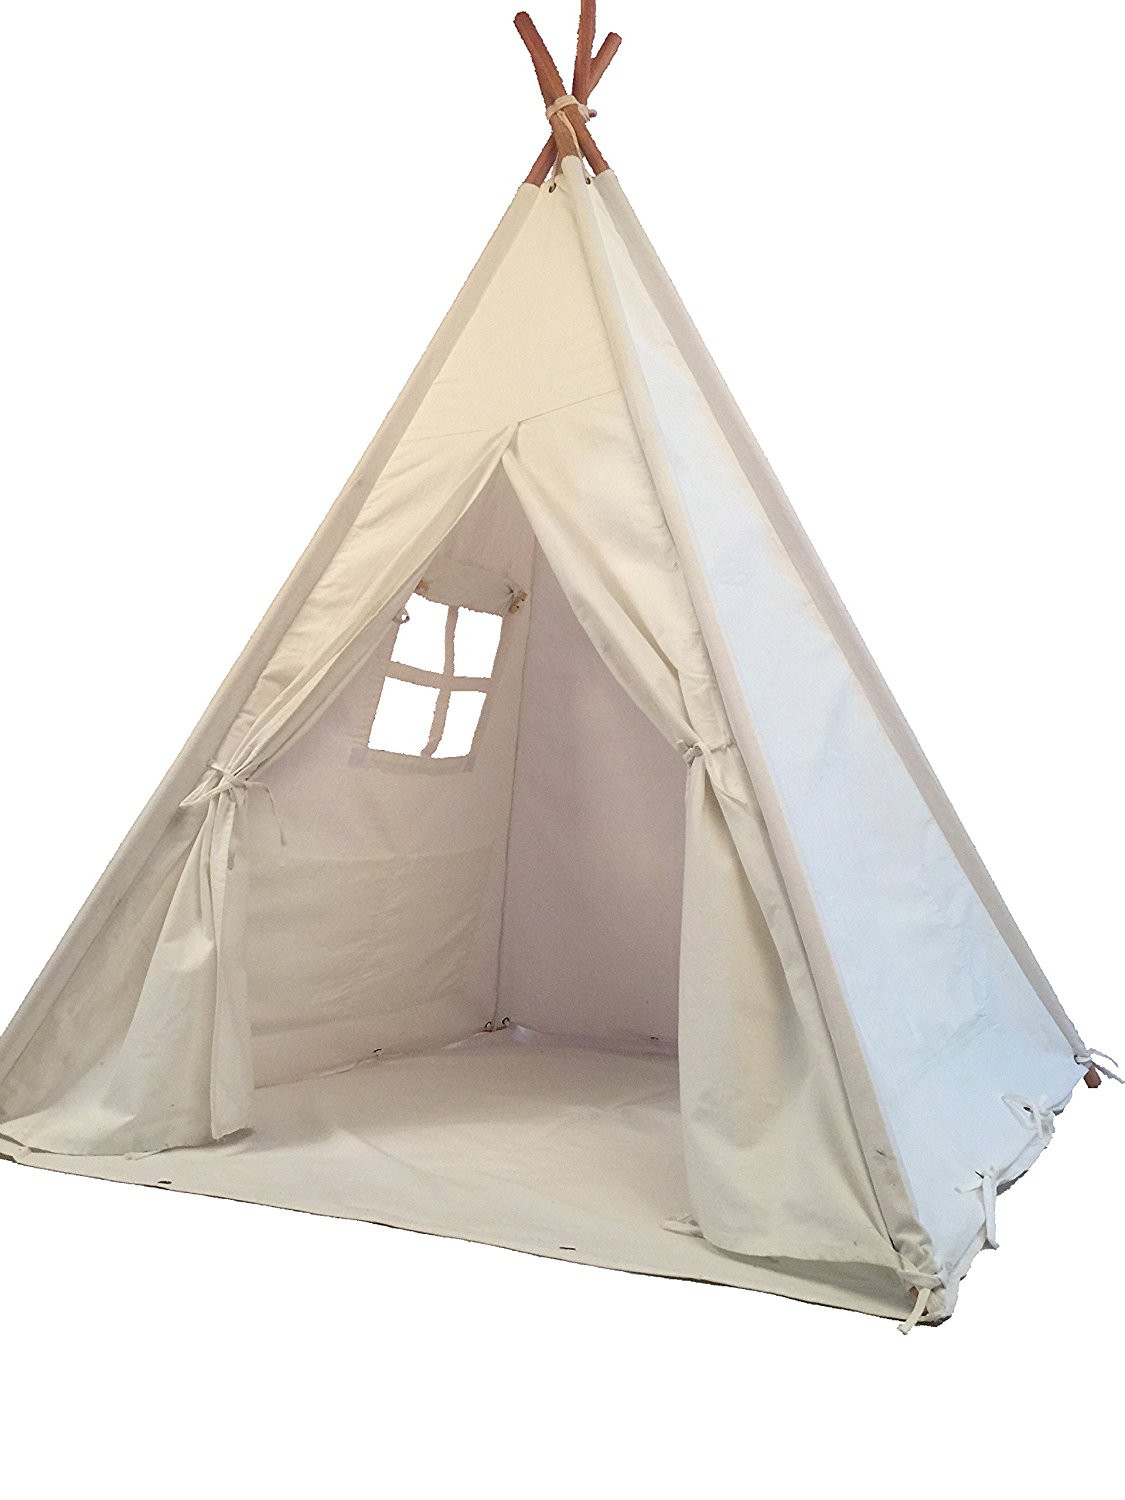 Indoor Kids Tent
 Pericross Kids Teepee Tent Indian Play Tent Children s